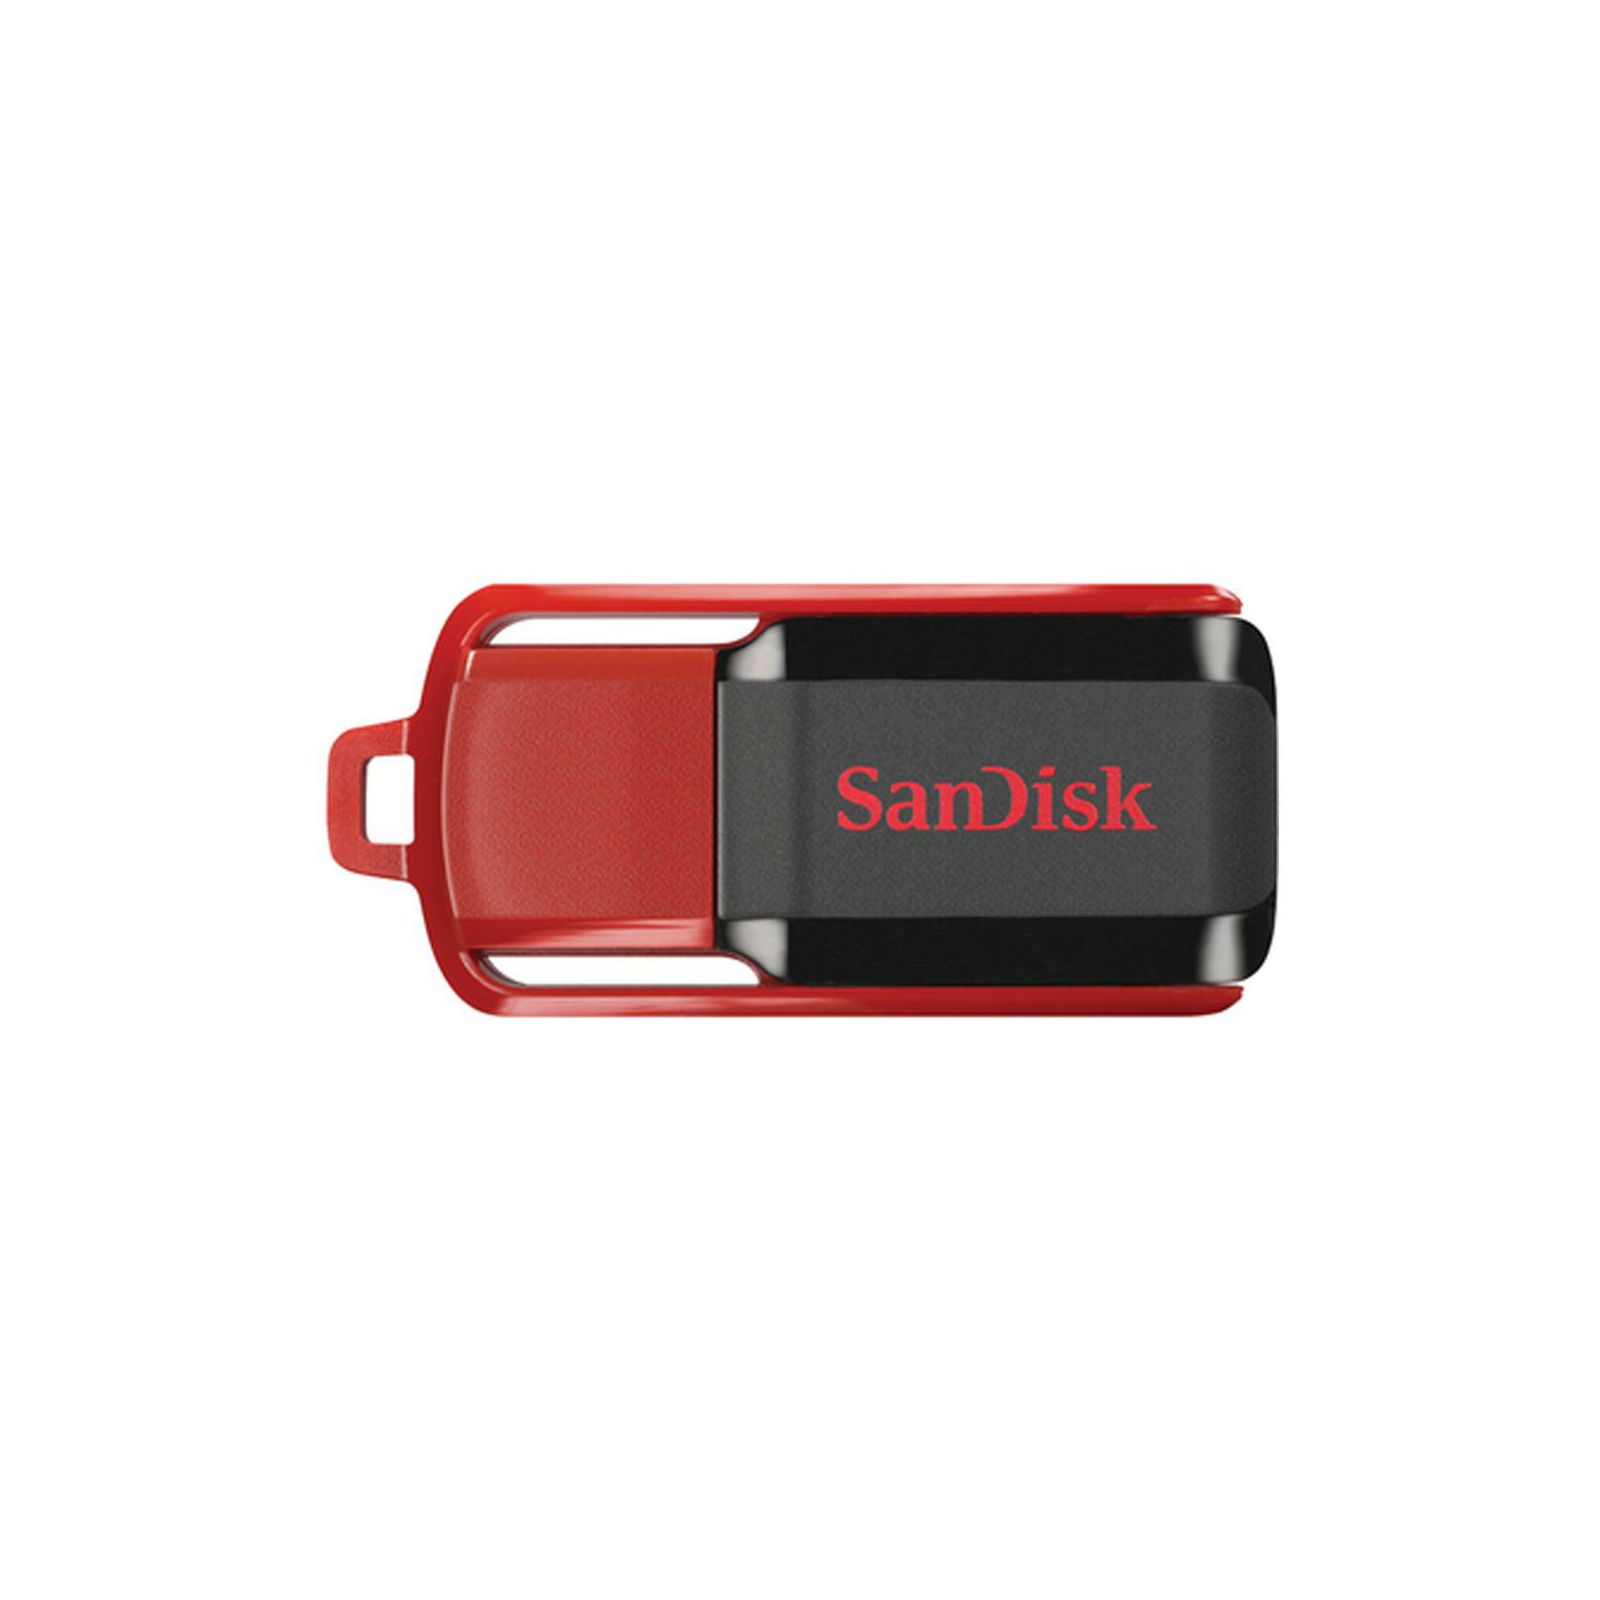 SanDisk Cruzer Switch 32GB SDCZ52-032G-B35 USB Memory Stick